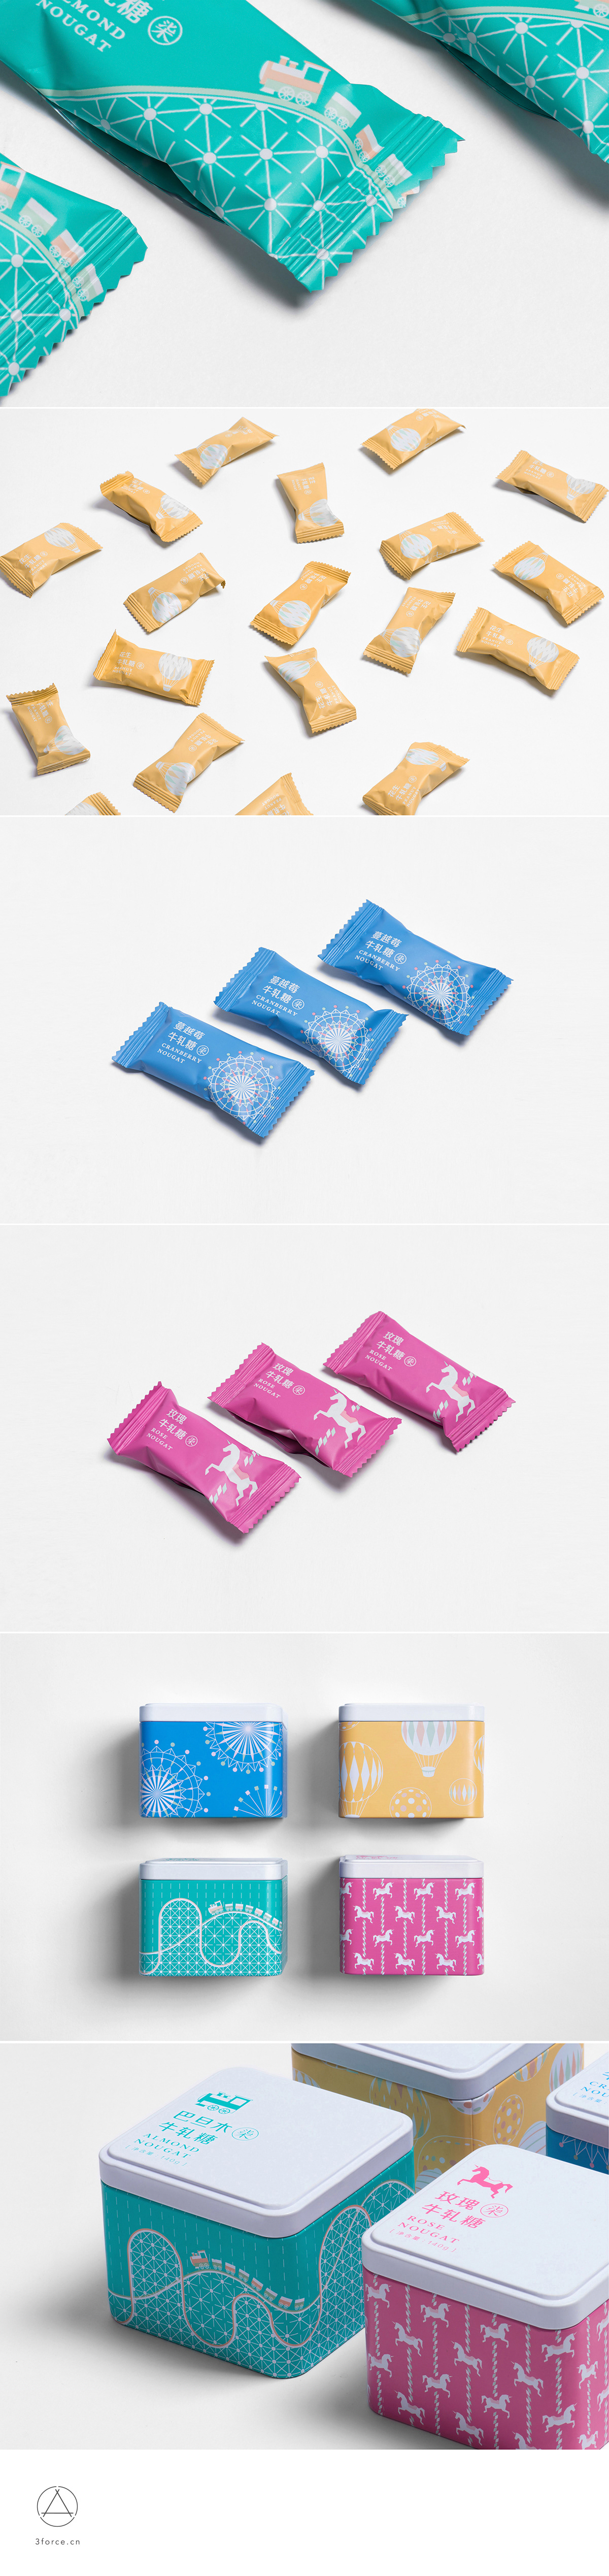 Nougat packaging design 牛轧糖 食品 包装设计 包装